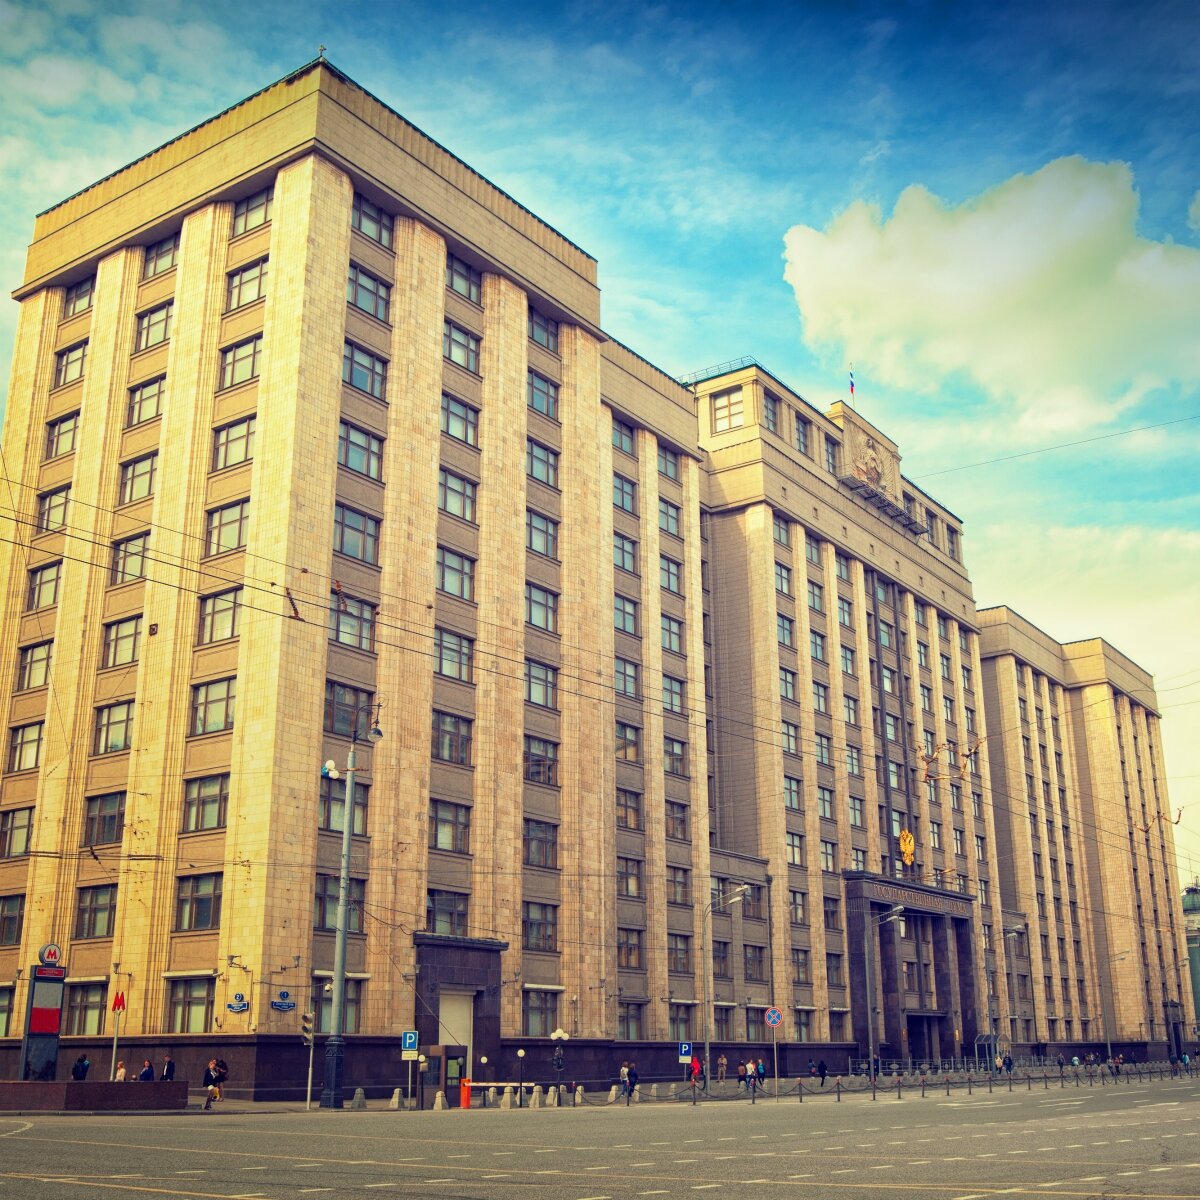 Здание Госдумы - памятник советской архитектуры 1930-х годов